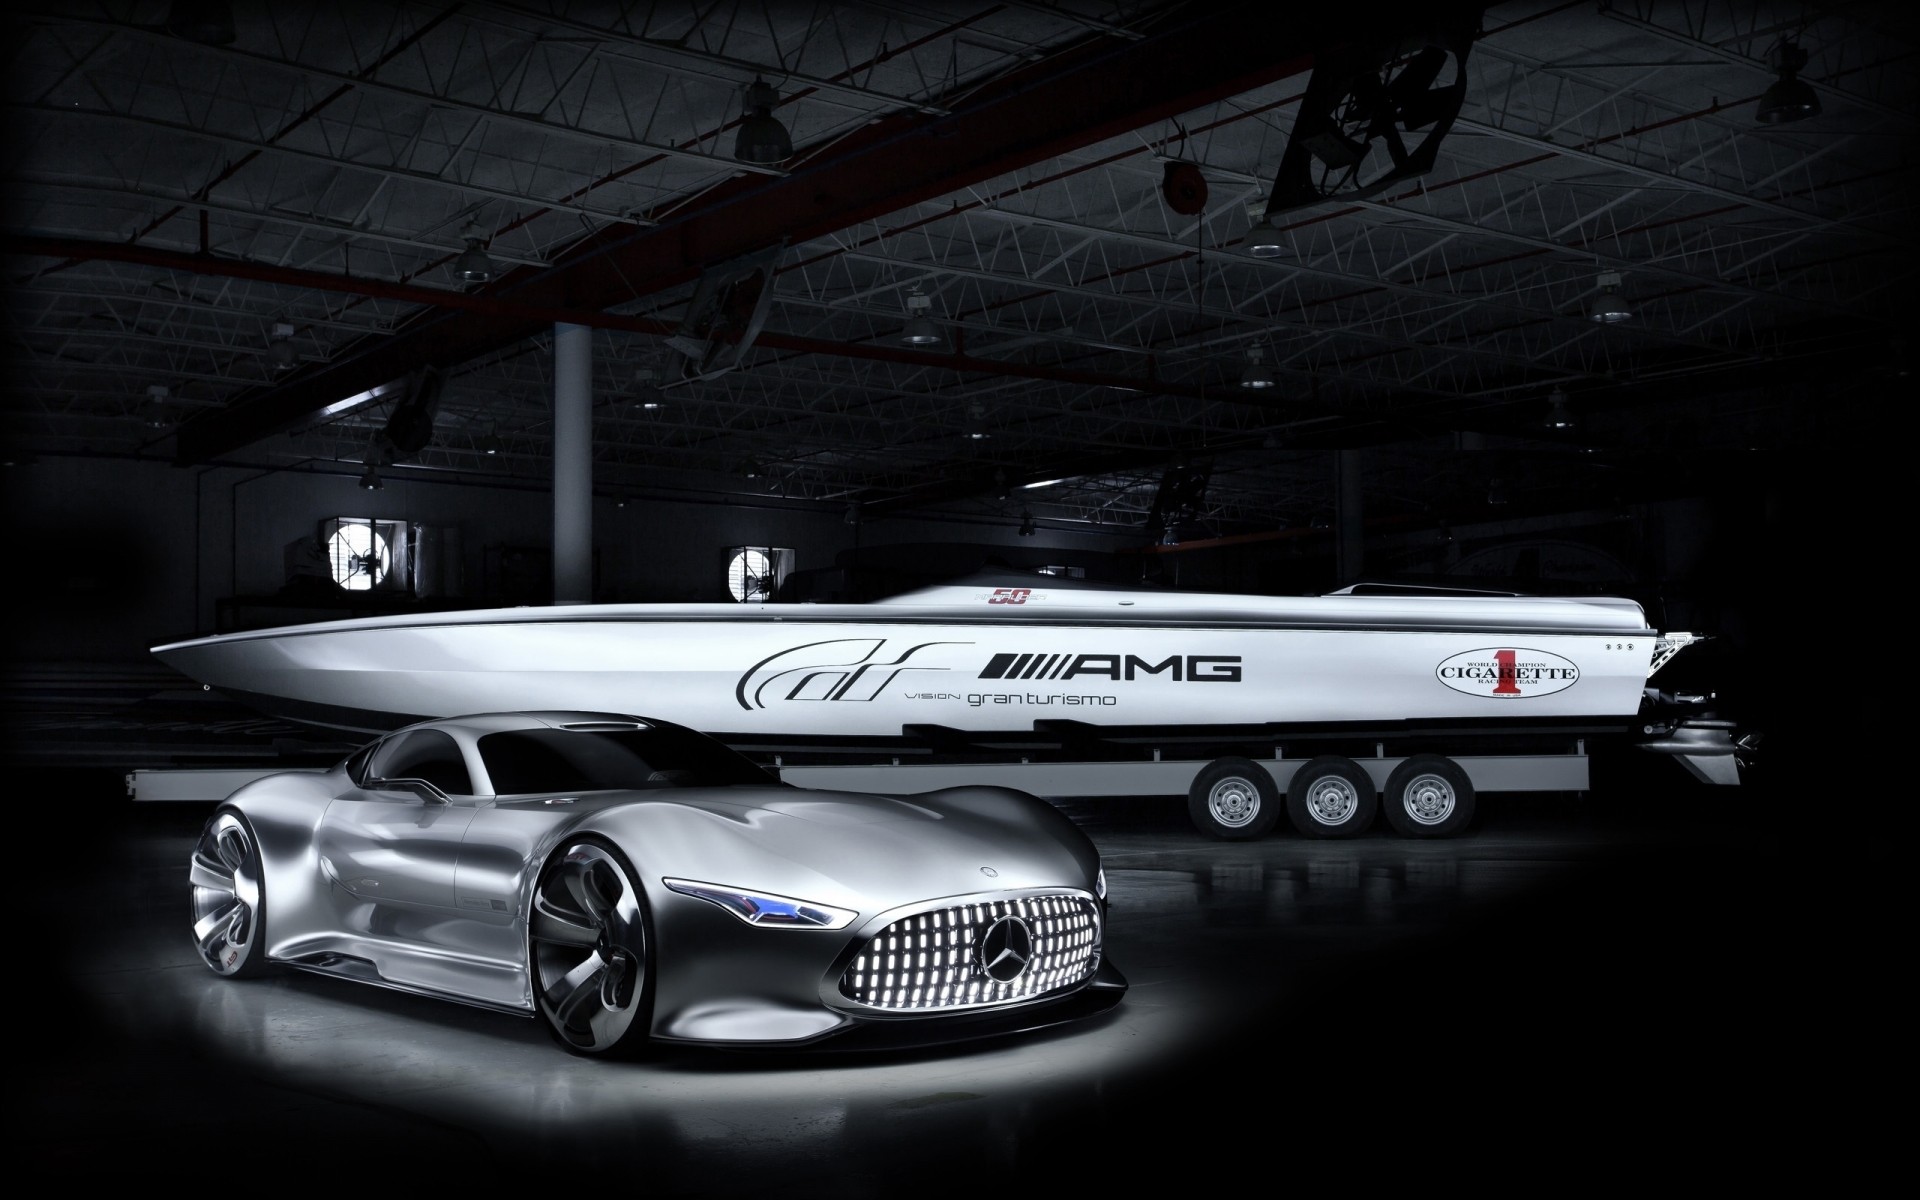 mercedes-benz автомобиль автомобиль транспортная система автомобильная автомобильный спорт гонки концепция будущее лодка скорость производительности мышцы